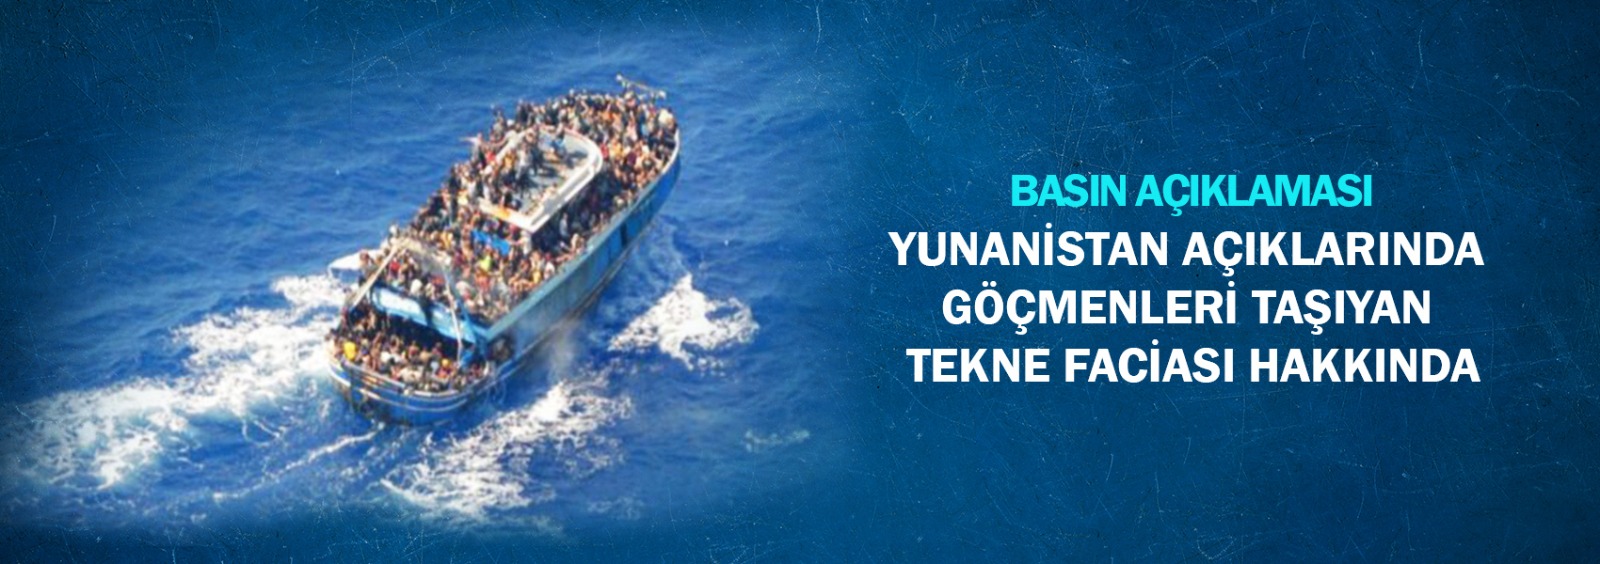 Yunanistan Açıklarında Göçmenleri Taşıyan Tekne Faciası Hakkında Basın Açıklaması